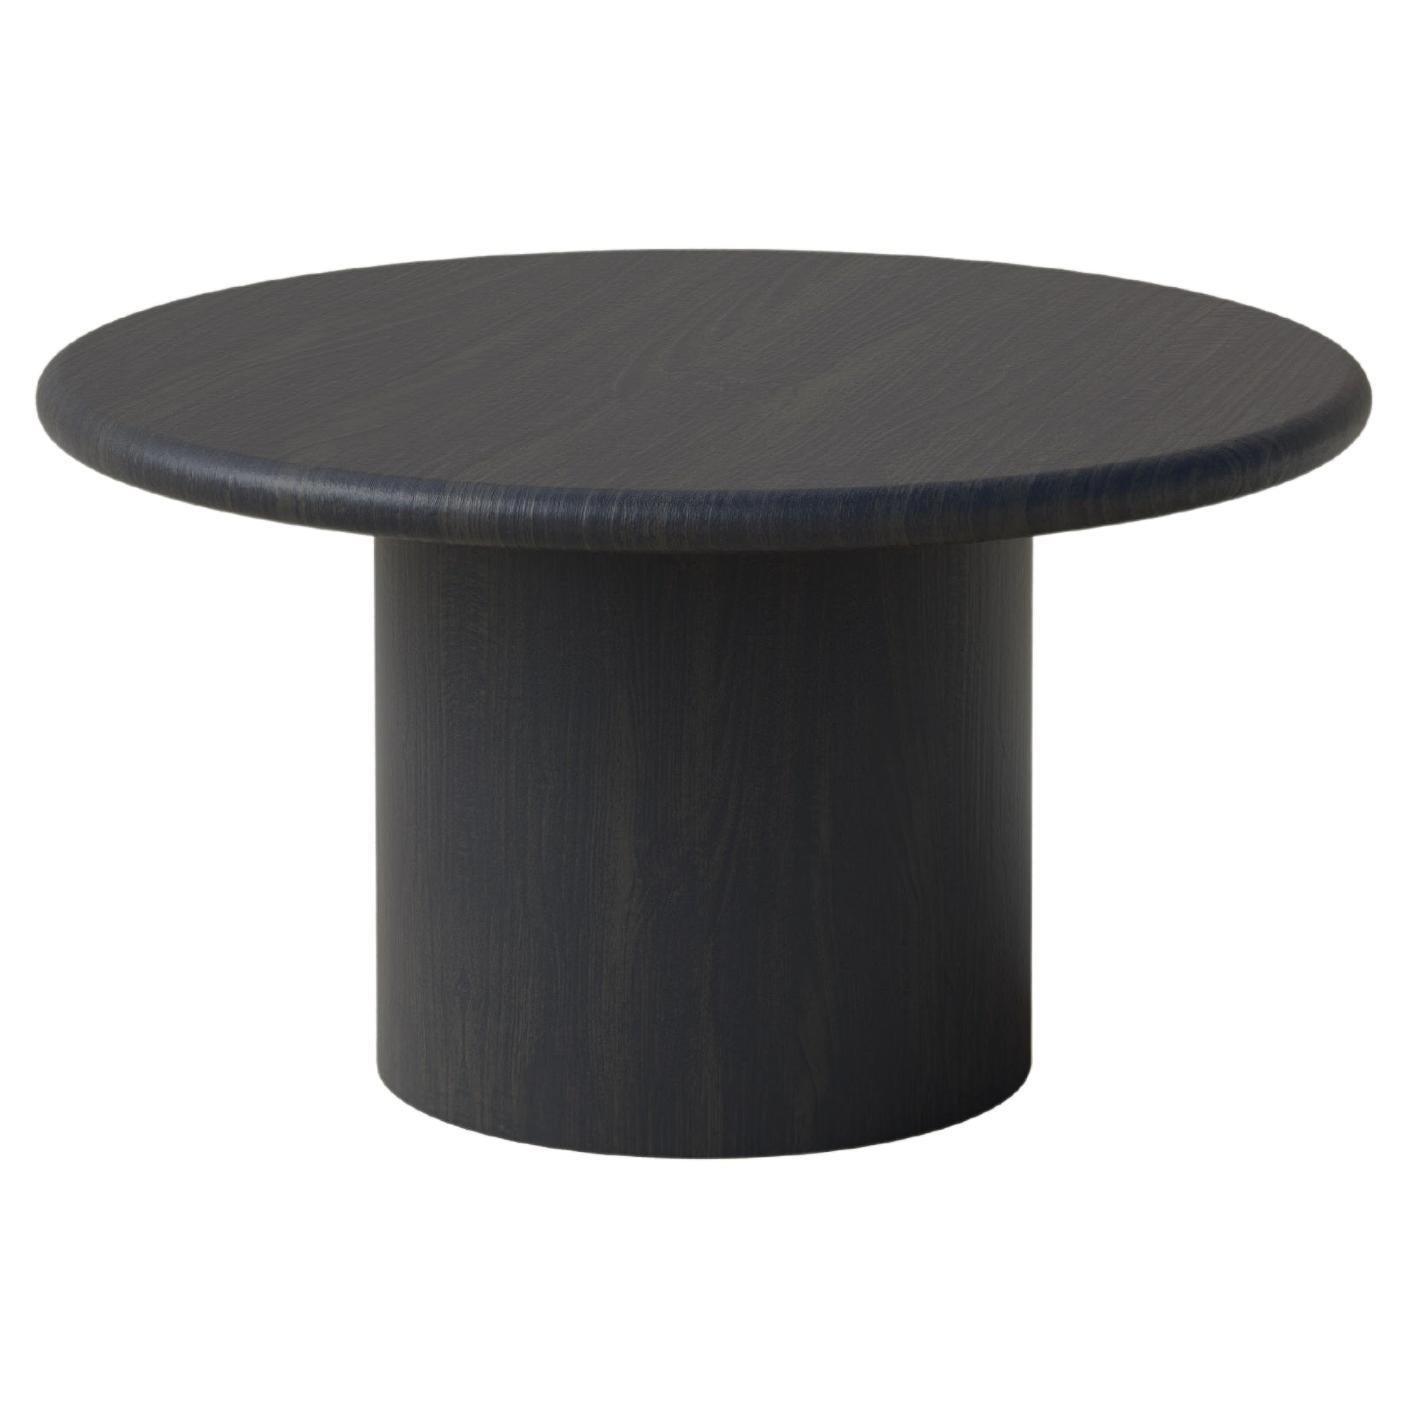 Table basse en forme de goutte d'eau, 600, chêne noir / chêne noir